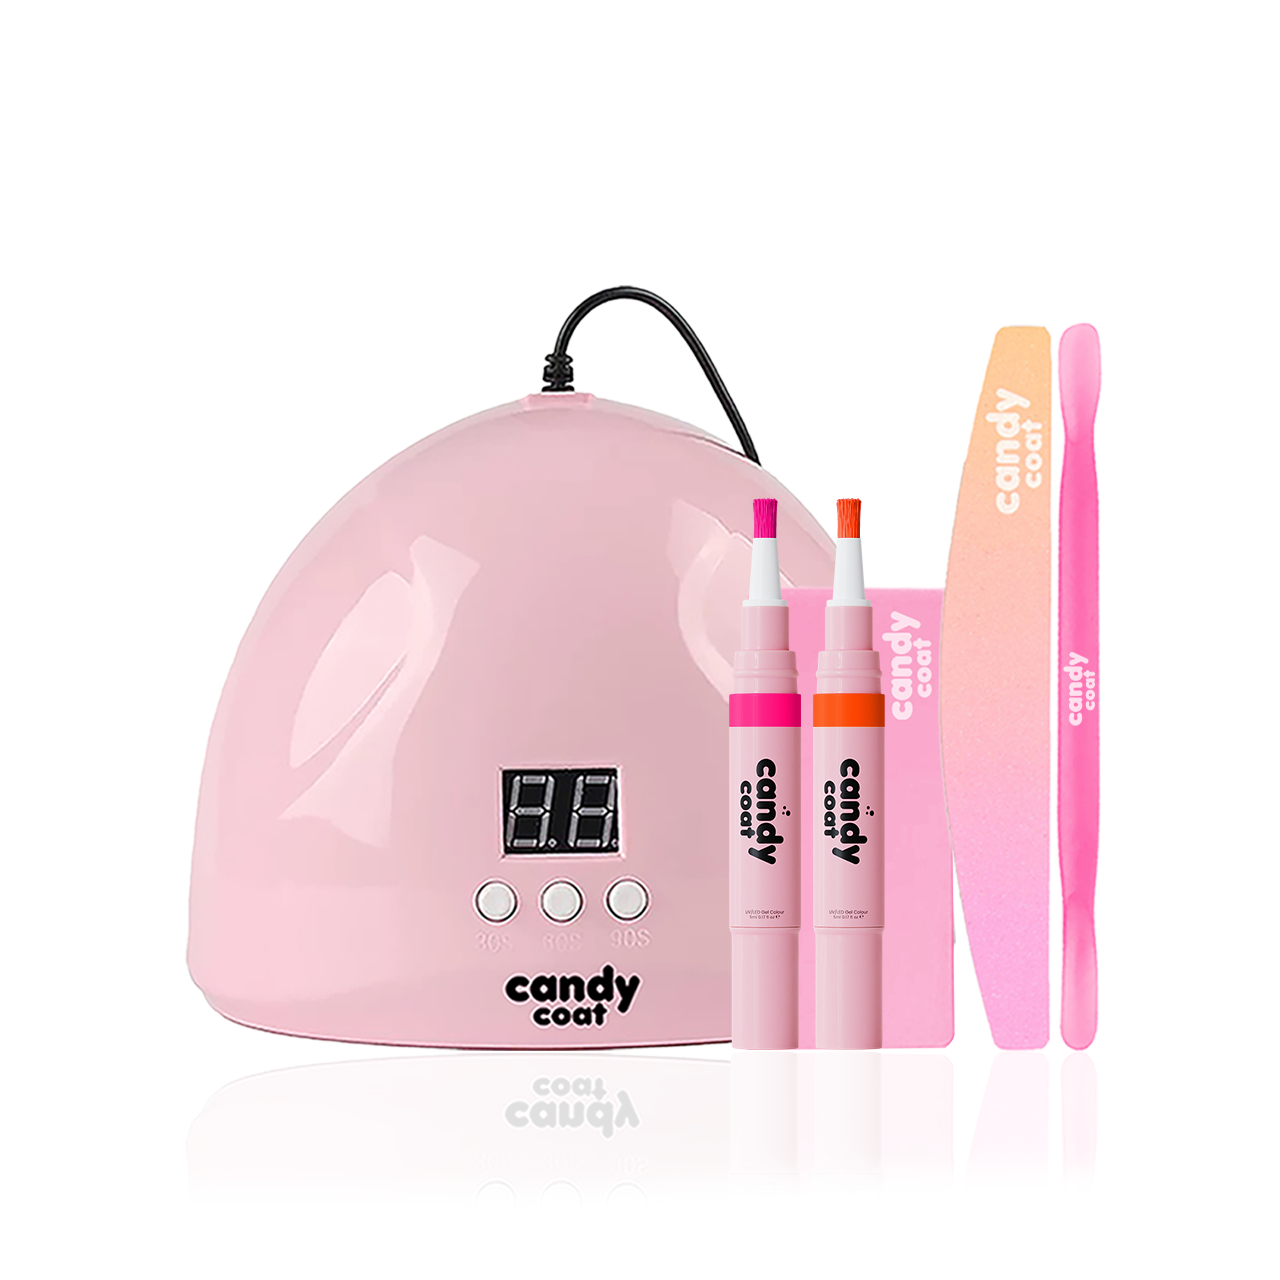 Candy Coat - Candy Stix Kit - HEMA Free